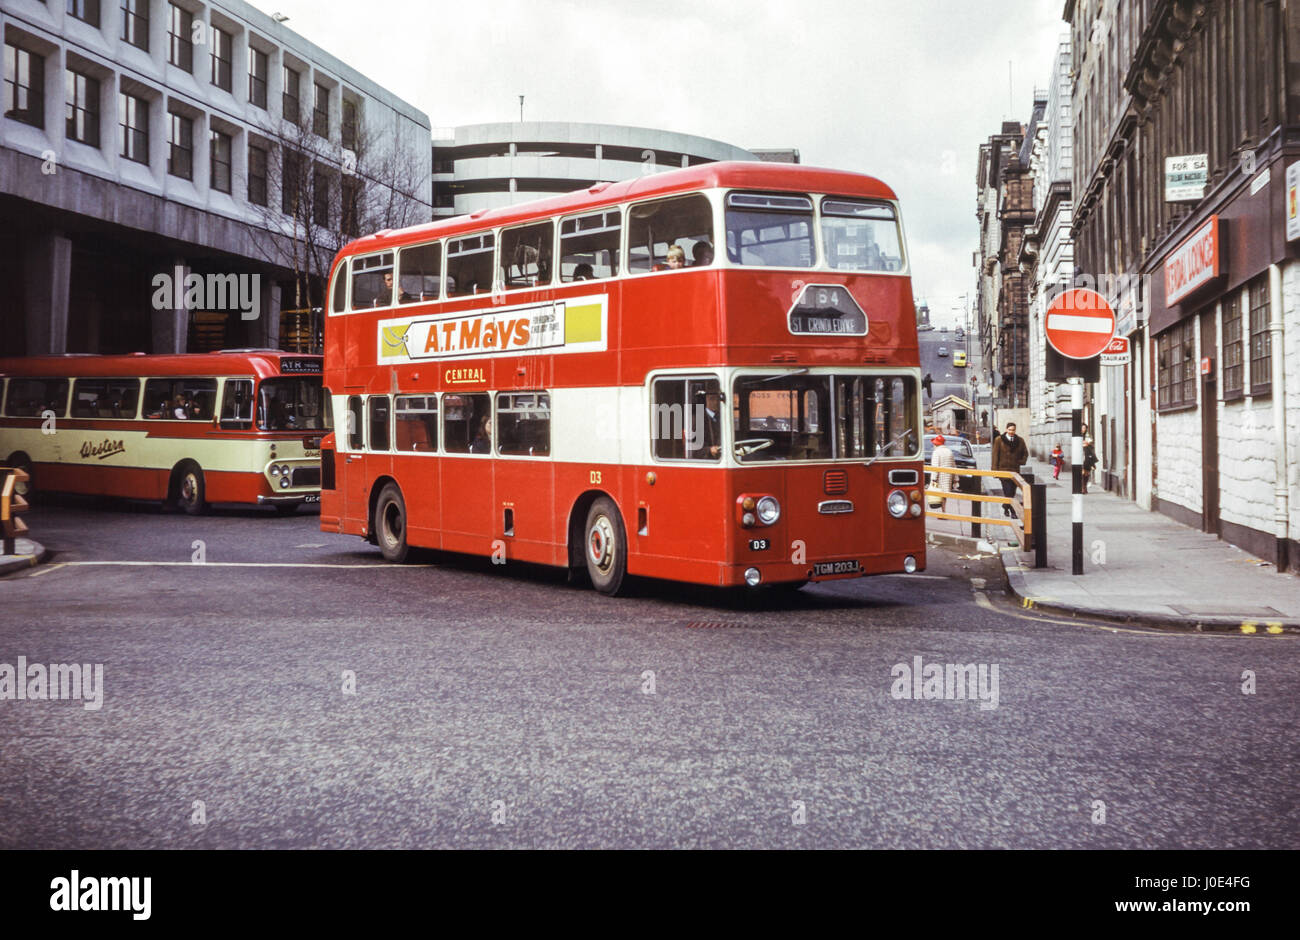 Escocia, Reino Unido - 1973: Vintage imagen de autobús en el centro de Glasgow. SMT Central Daimler CRG6LX y chasis F43/34H ECW cuerpo D3 (número de registro TGM 203J). Foto de stock